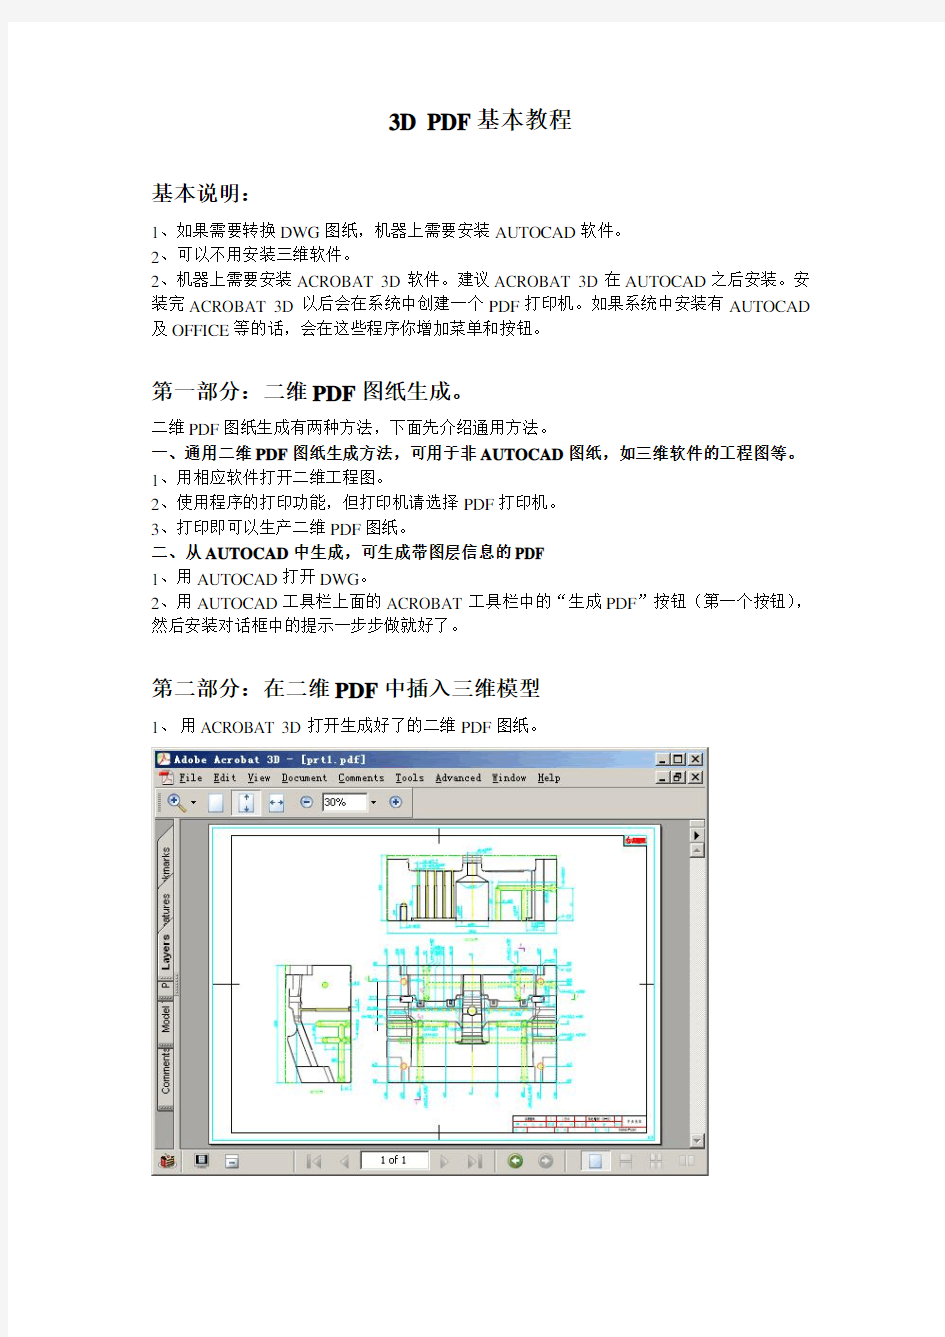 3D模型嵌入PDF基本教程